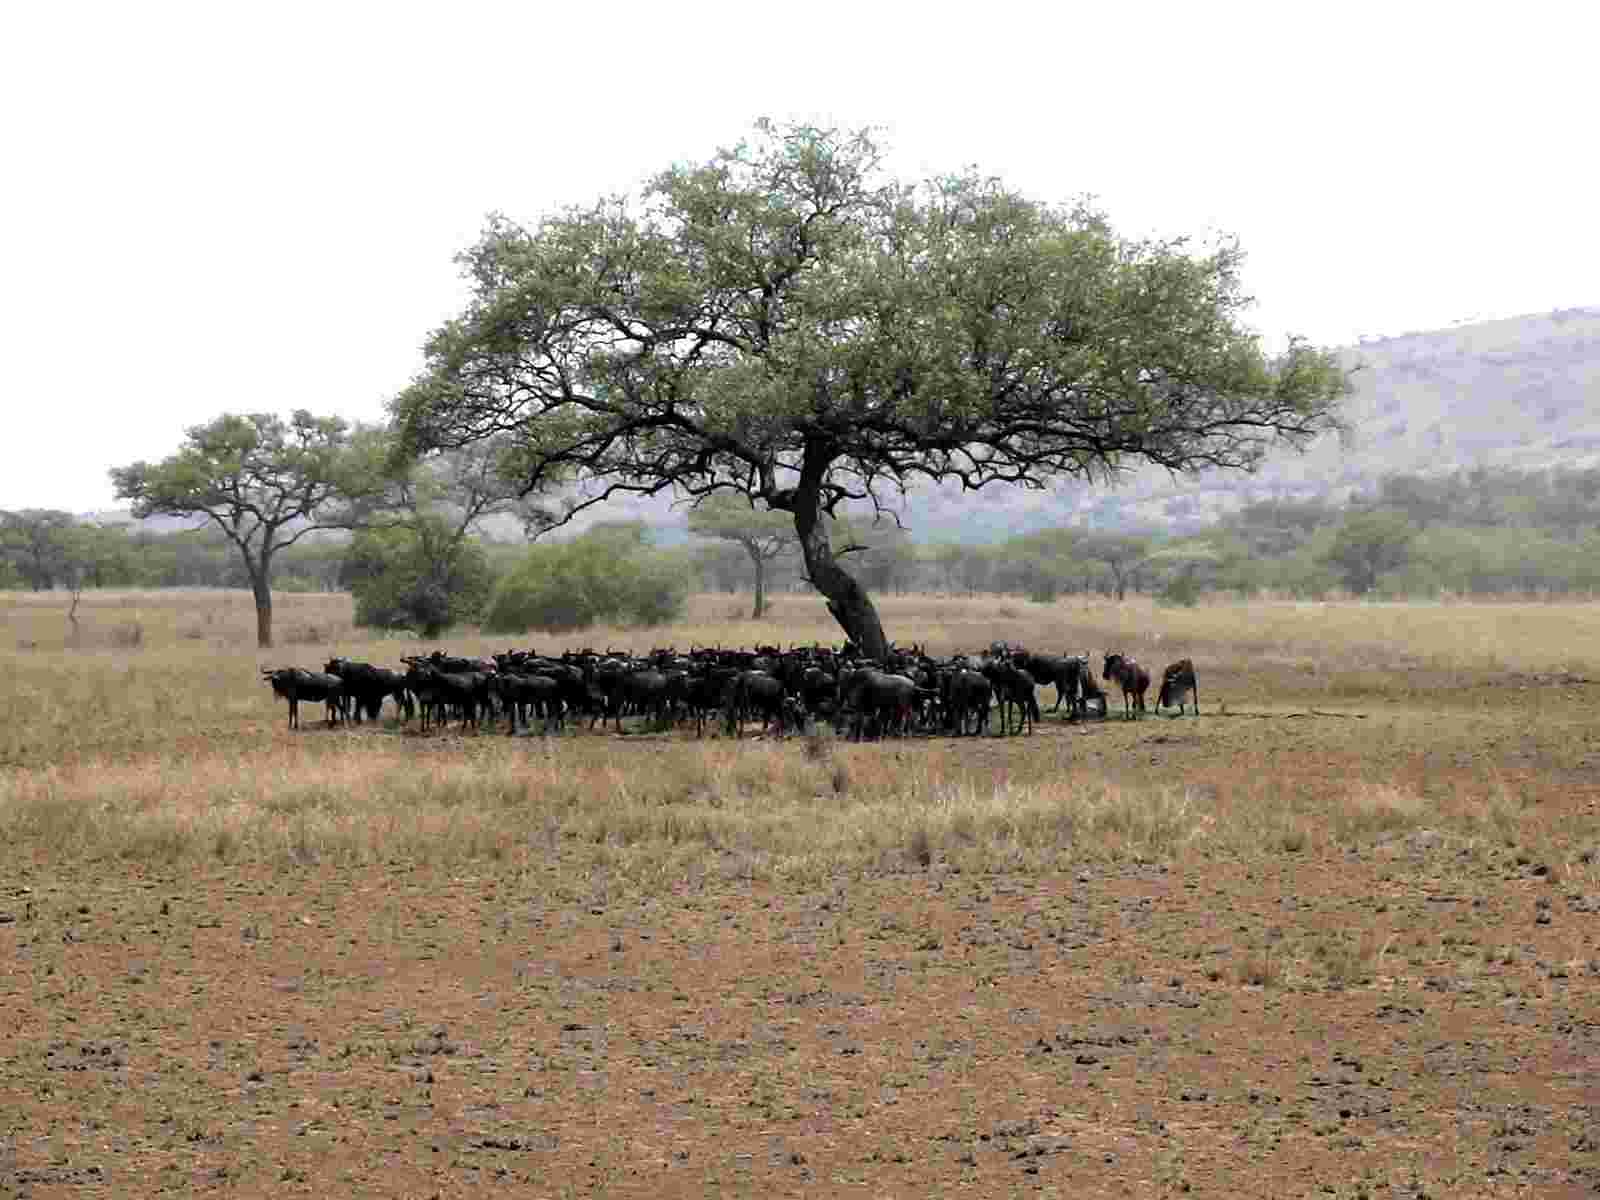 Wildebeests seek shade